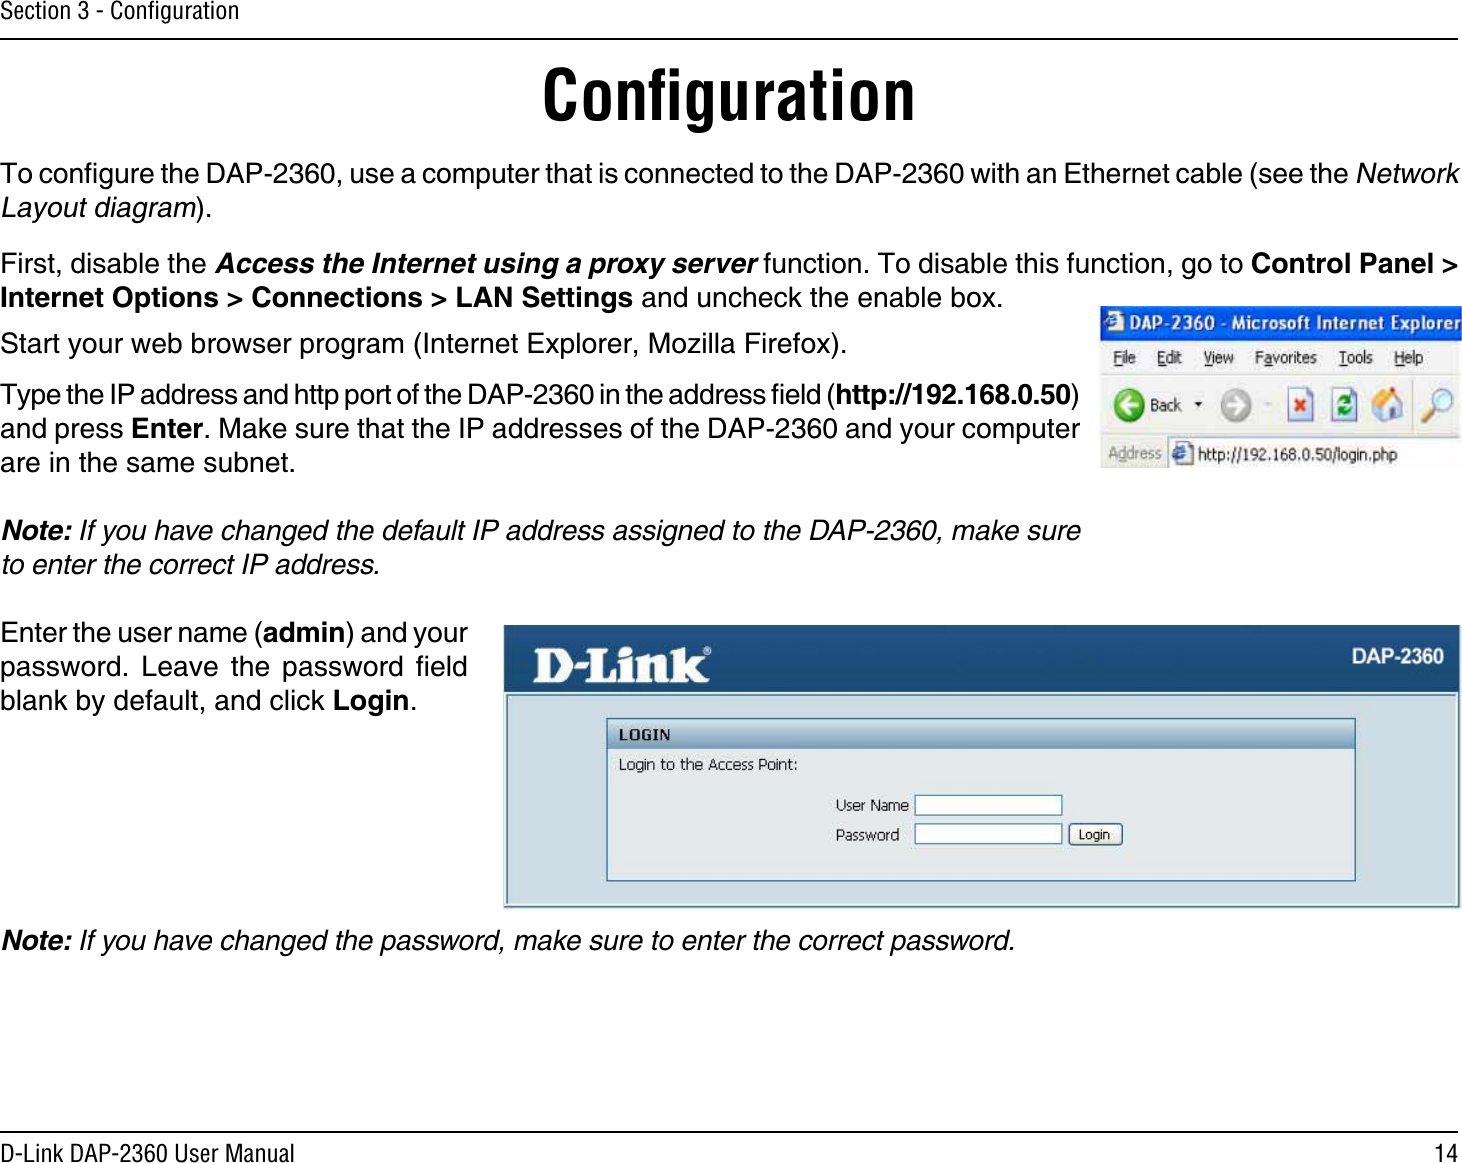 14D-Link DAP-2360 User ManualSection 3 - ConﬁgurationConﬁguration6QEQPſIWTGVJG&amp;#2WUGCEQORWVGTVJCVKUEQPPGEVGFVQVJG&amp;#2YKVJCP&apos;VJGTPGVECDNGUGGVJG0GVYQTM.C[QWVFKCITCO(KTUVFKUCDNGVJGAccess the Internet using a proxy server HWPEVKQP6QFKUCDNGVJKUHWPEVKQPIQVQ %QPVTQN2CPGN +PVGTPGV1RVKQPU %QPPGEVKQPU .#05GVVKPIUCPFWPEJGEMVJGGPCDNGDQZ5VCTV[QWTYGDDTQYUGTRTQITCO+PVGTPGV&apos;ZRNQTGT/Q\KNNC(KTGHQZ6[RGVJG+2CFFTGUUCPFJVVRRQTVQHVJG&amp;#2KPVJGCFFTGUUſGNFJVVRCPFRTGUU&apos;PVGT/CMGUWTGVJCVVJG+2CFFTGUUGUQHVJG&amp;#2CPF[QWTEQORWVGTCTGKPVJGUCOGUWDPGVNote: If you have changed the default IP address assigned to the DAP-2360, make sure to enter the correct IP address. &apos;PVGTVJGWUGTPCOGCFOKPCPF[QWTRCUUYQTF .GCXG VJG RCUUYQTF ſGNFDNCPMD[FGHCWNVCPFENKEM.QIKPNote: If you have changed the password, make sure to enter the correct password.